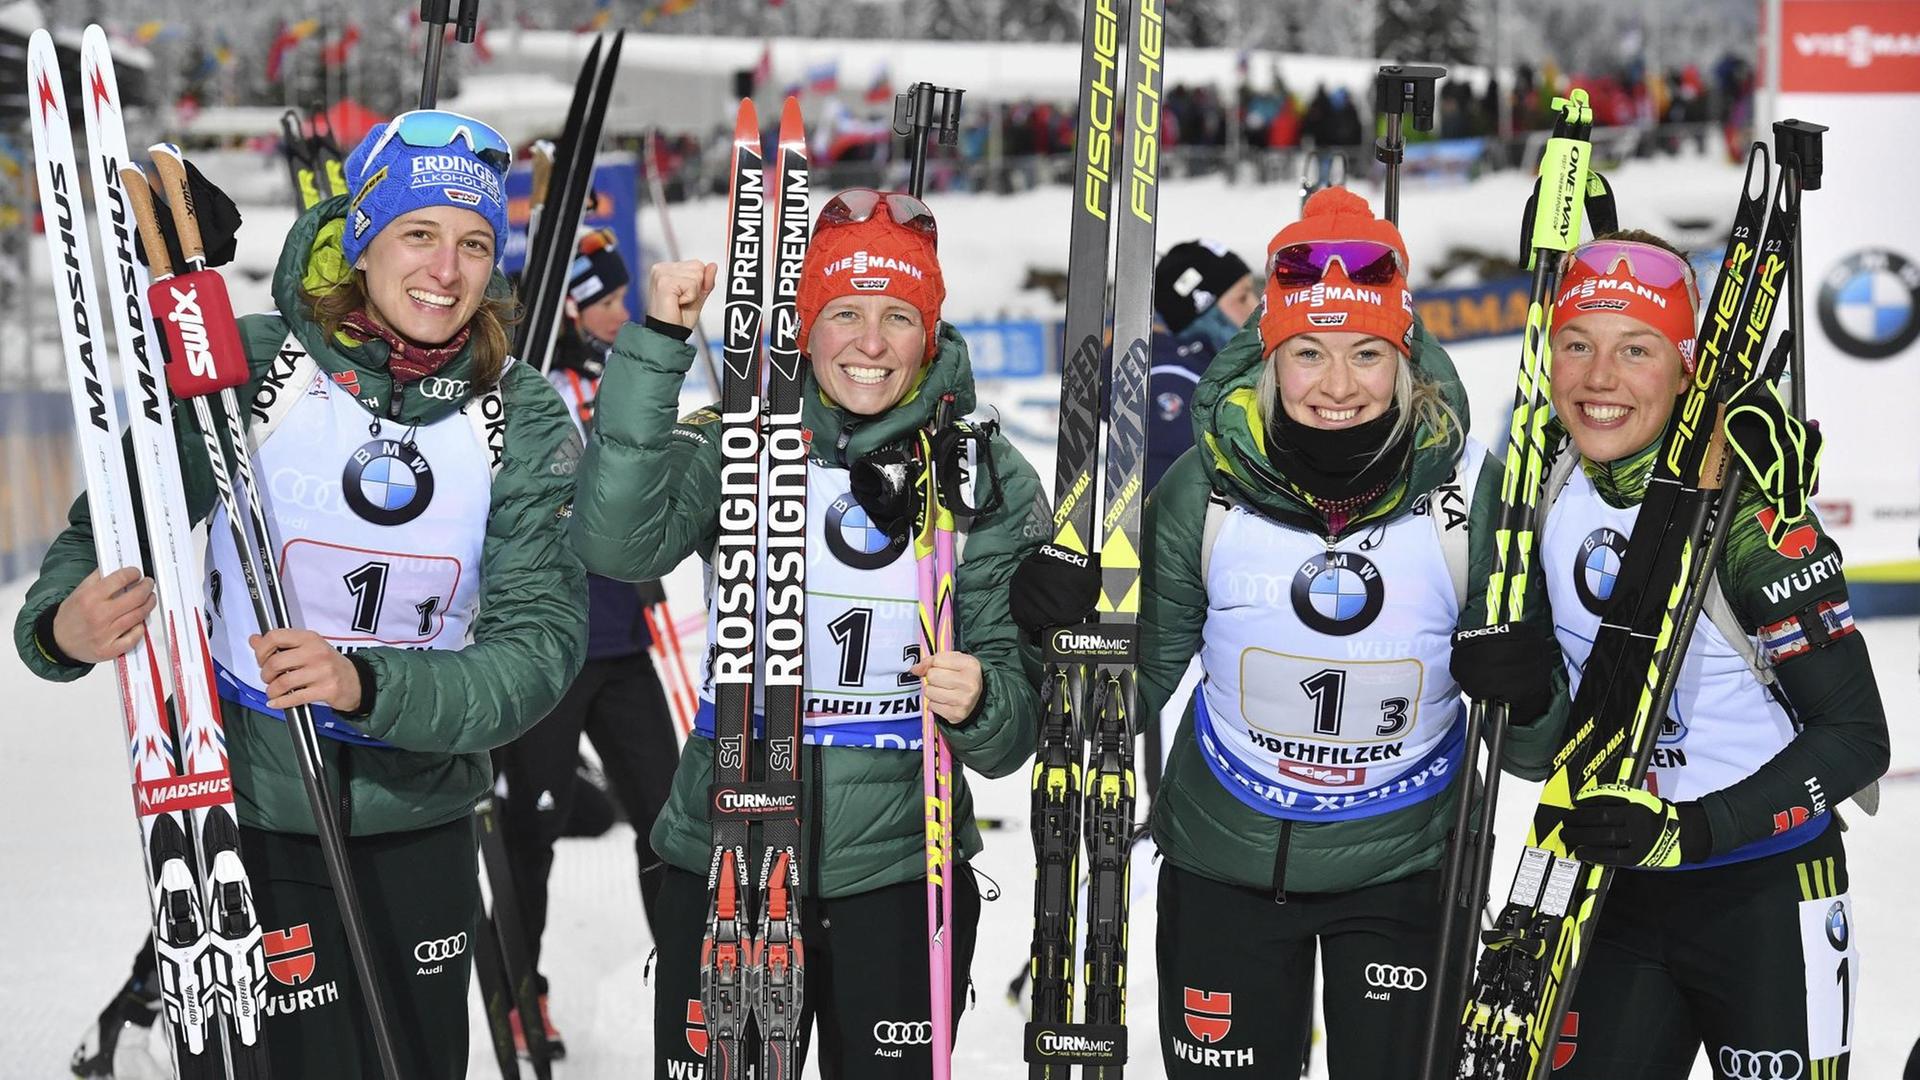 Die deutsche Biathlon-Staffel mit (v.l.) Vanessa Hinz, Franziska Hildebrand, Maren Hammerschmidt and Laura Dahlmeier nach dem Weltcupsieg in Hochfilzen am 10.12.2017.